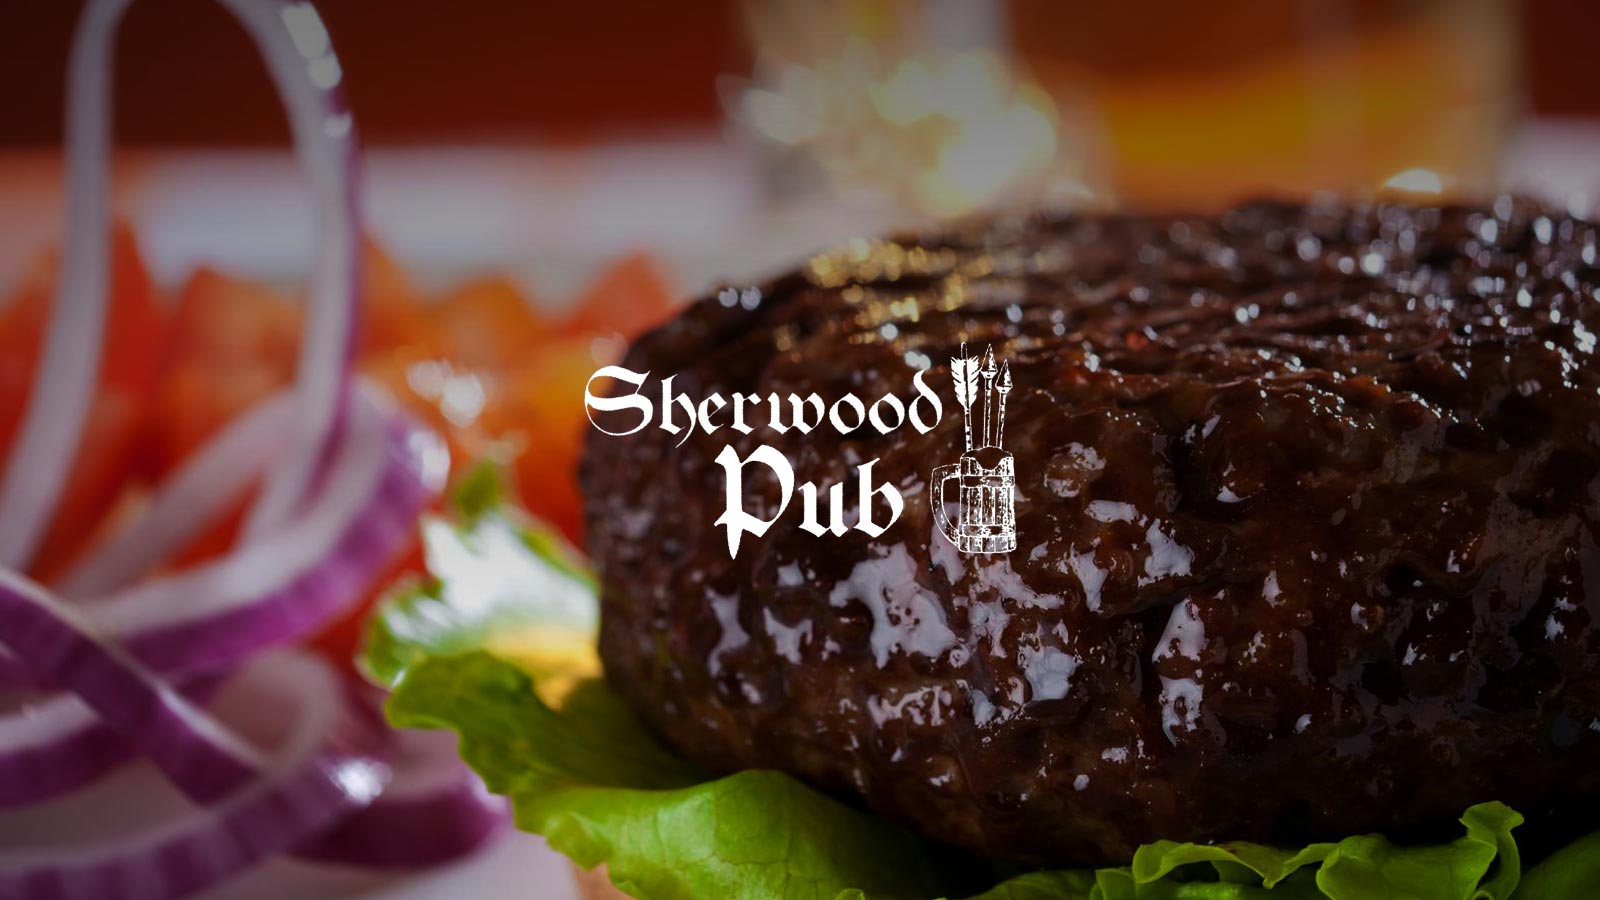 Sherwood Pub Salzano - Grigliate di carne e panini di cinghiale - Paninoteca e birreria con birre artigianali - Venezia